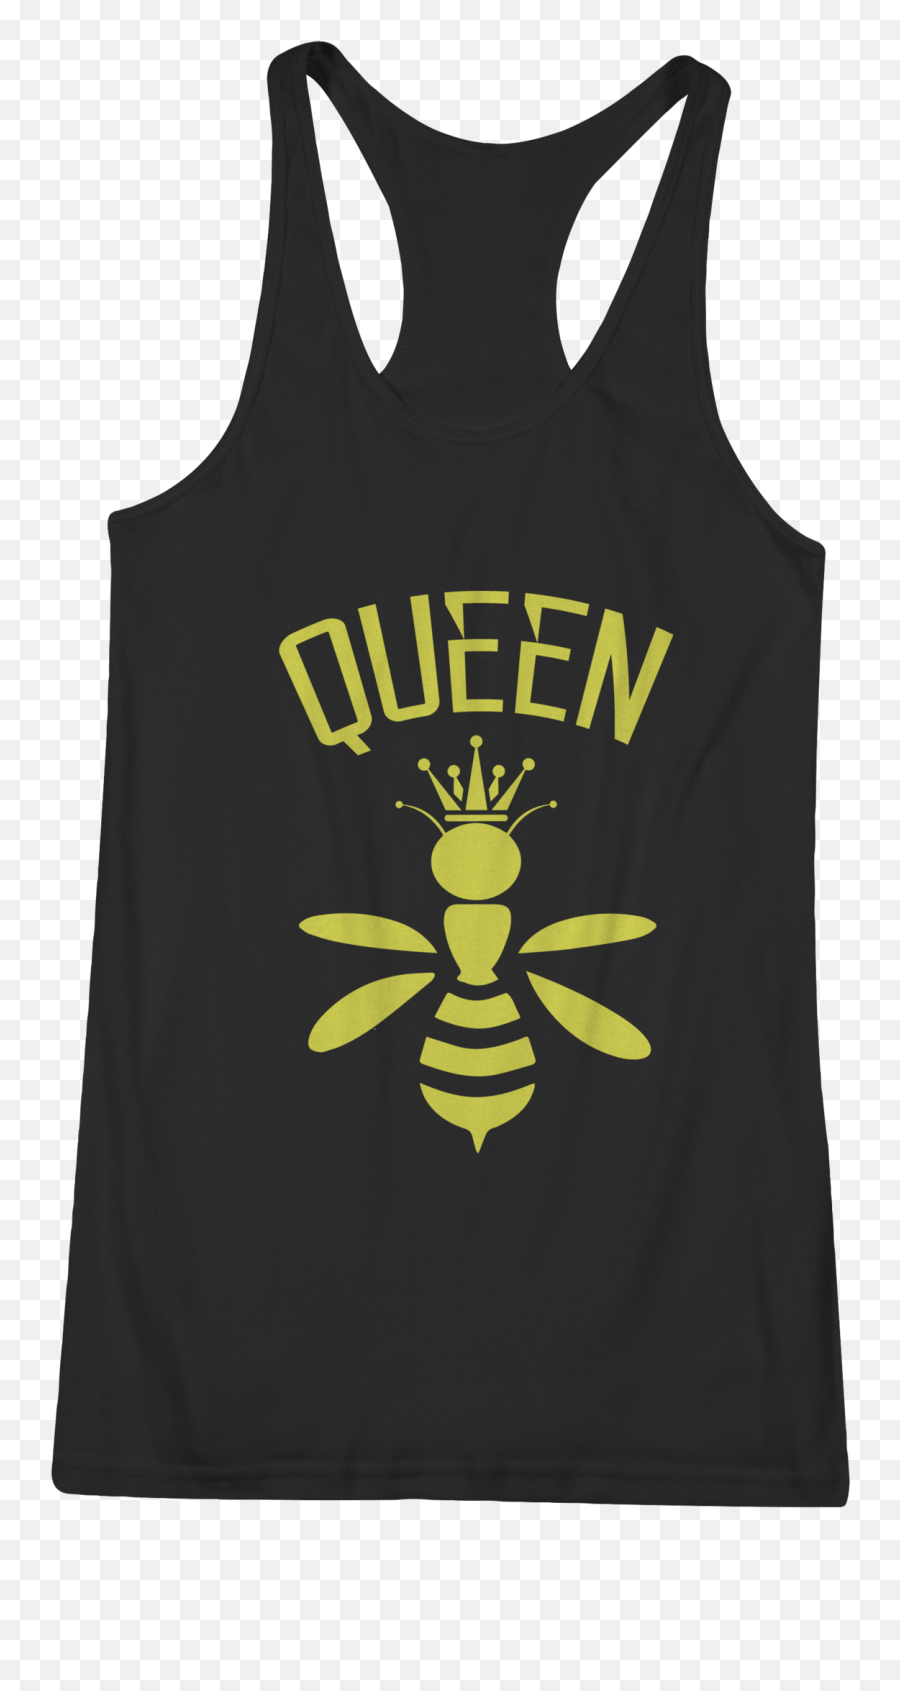 Download Queen Bee - Sleeveless Shirt Png,Queen Bee Png